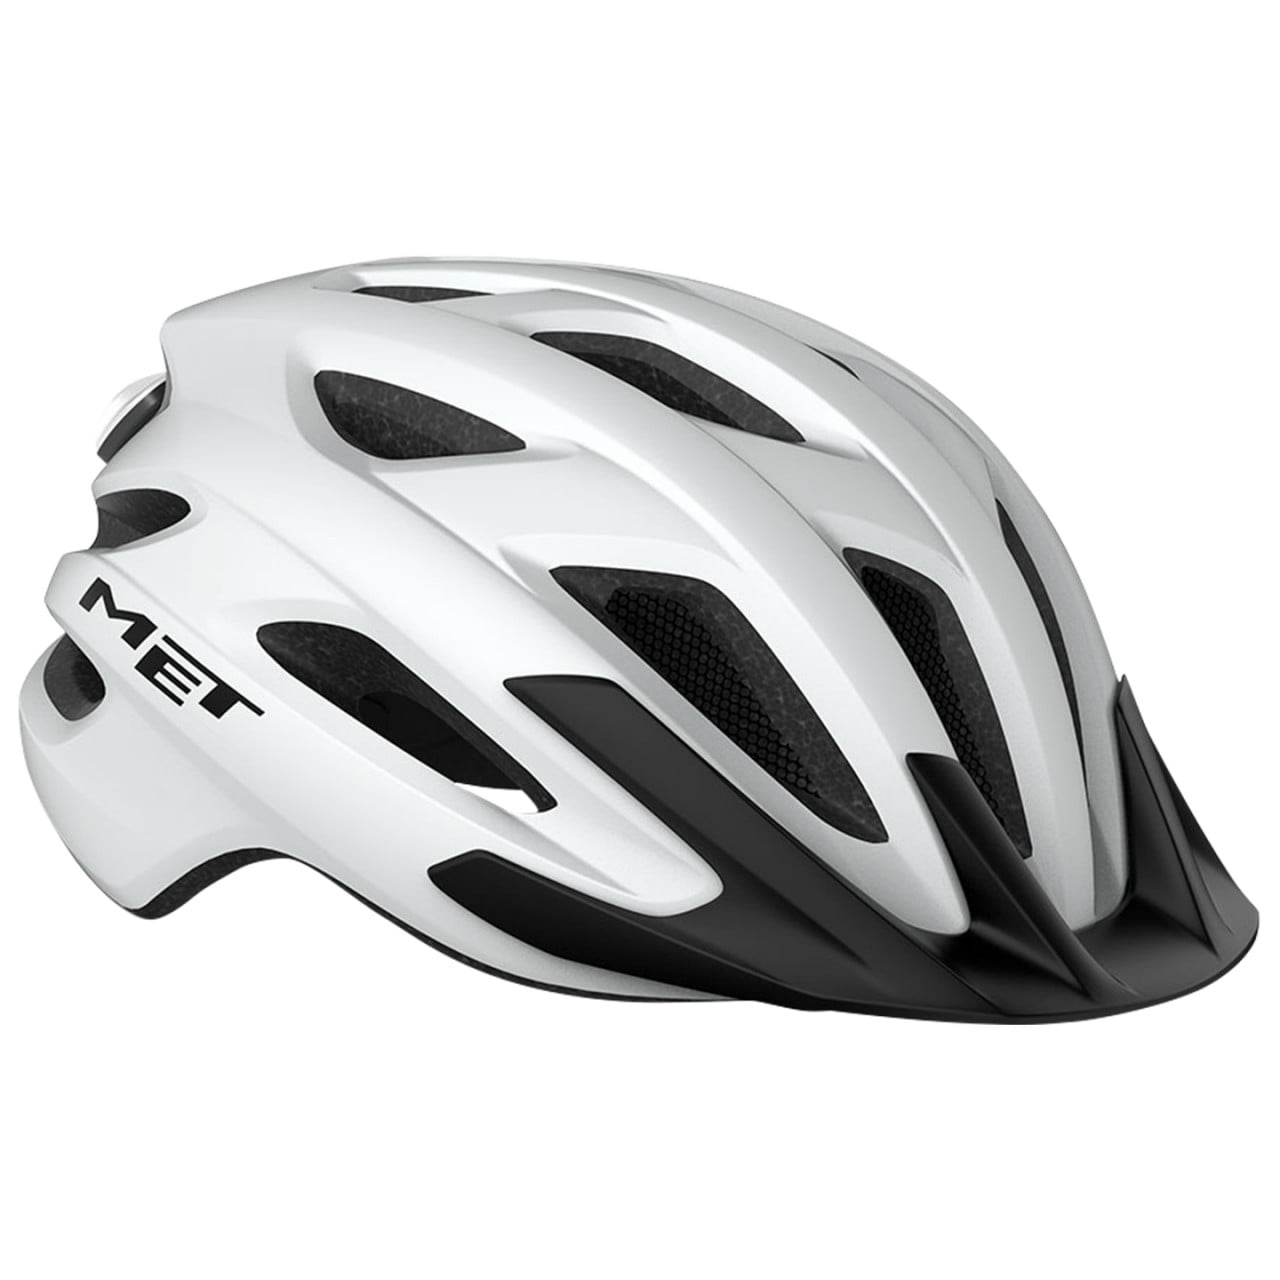 Crossover MTB Helmet